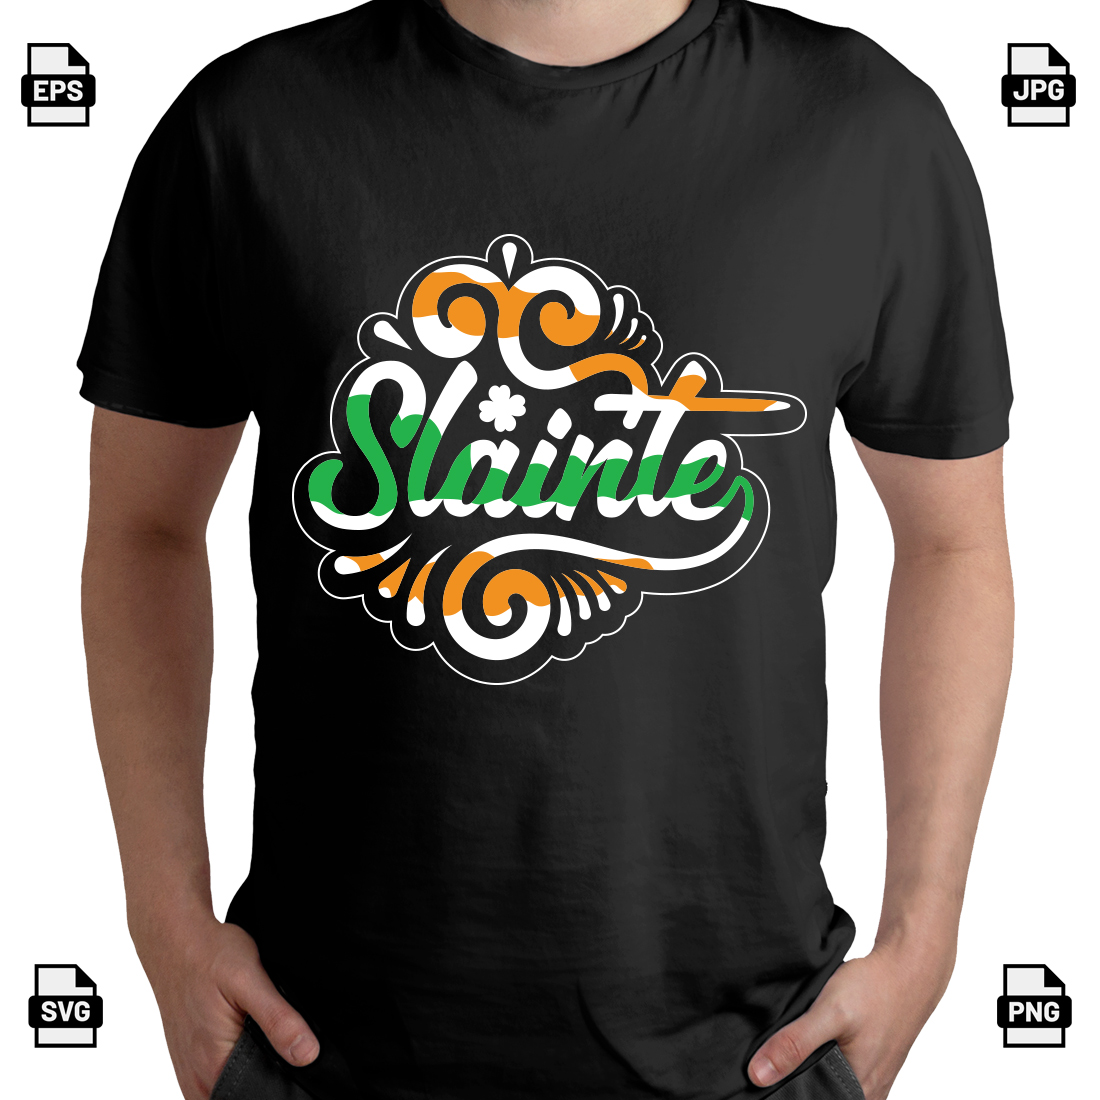 Slainte St Patrick's day t-shirt design preview image.